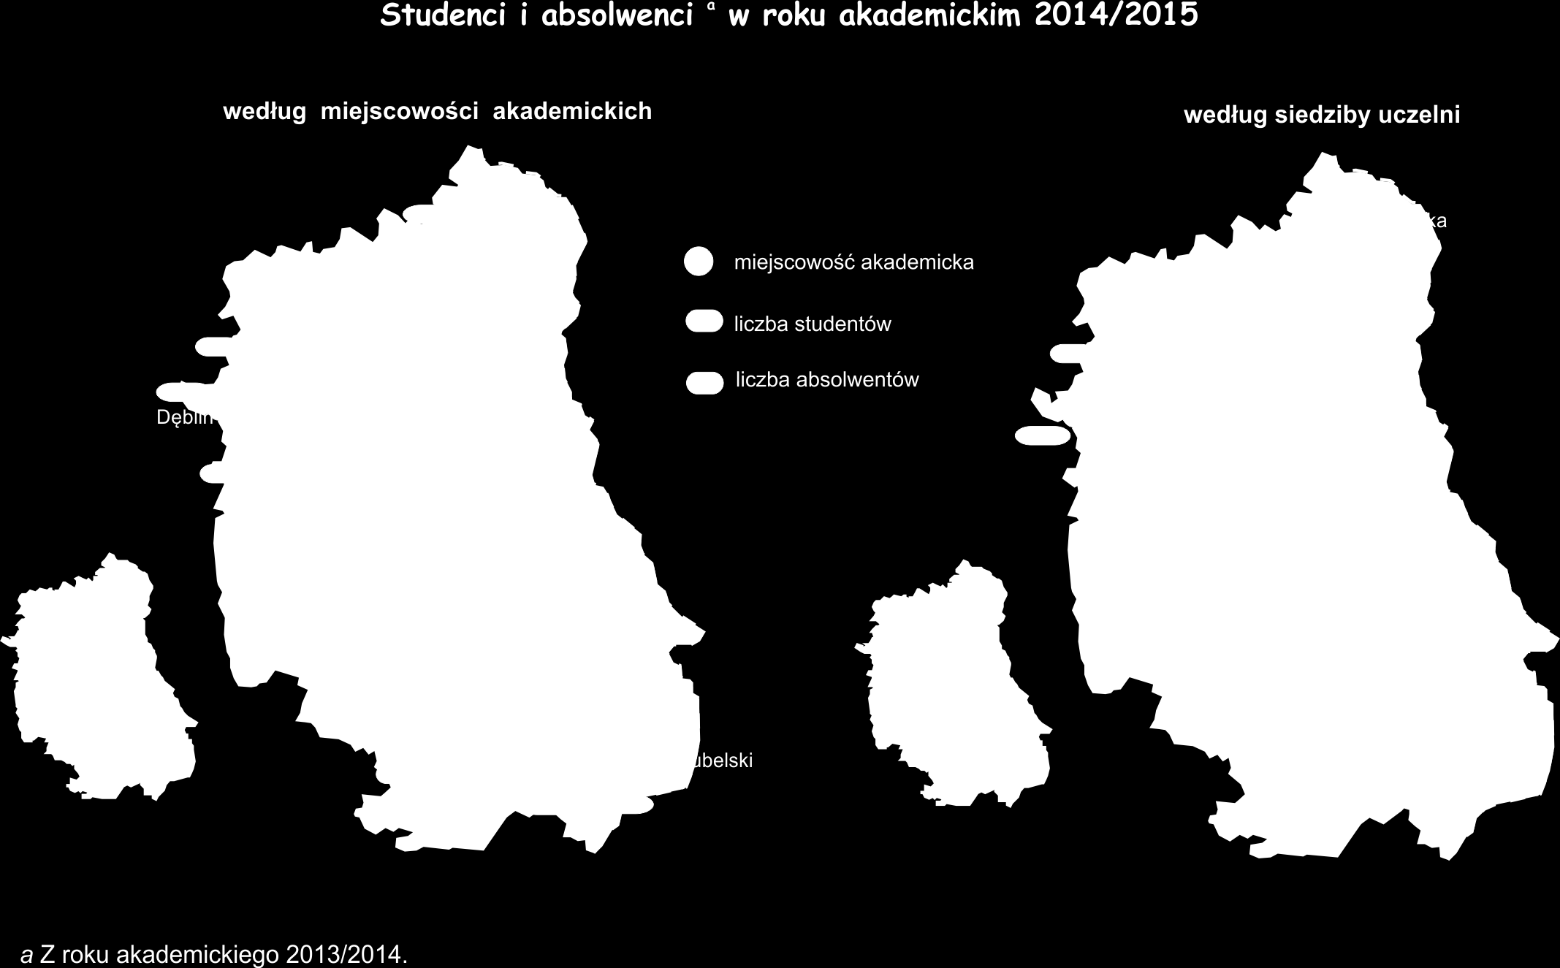 W porównaniu z poprzednim rokiem akademickim, zmniejszyła się zarówno liczba uczelni wyższych, jak i liczba studentów.